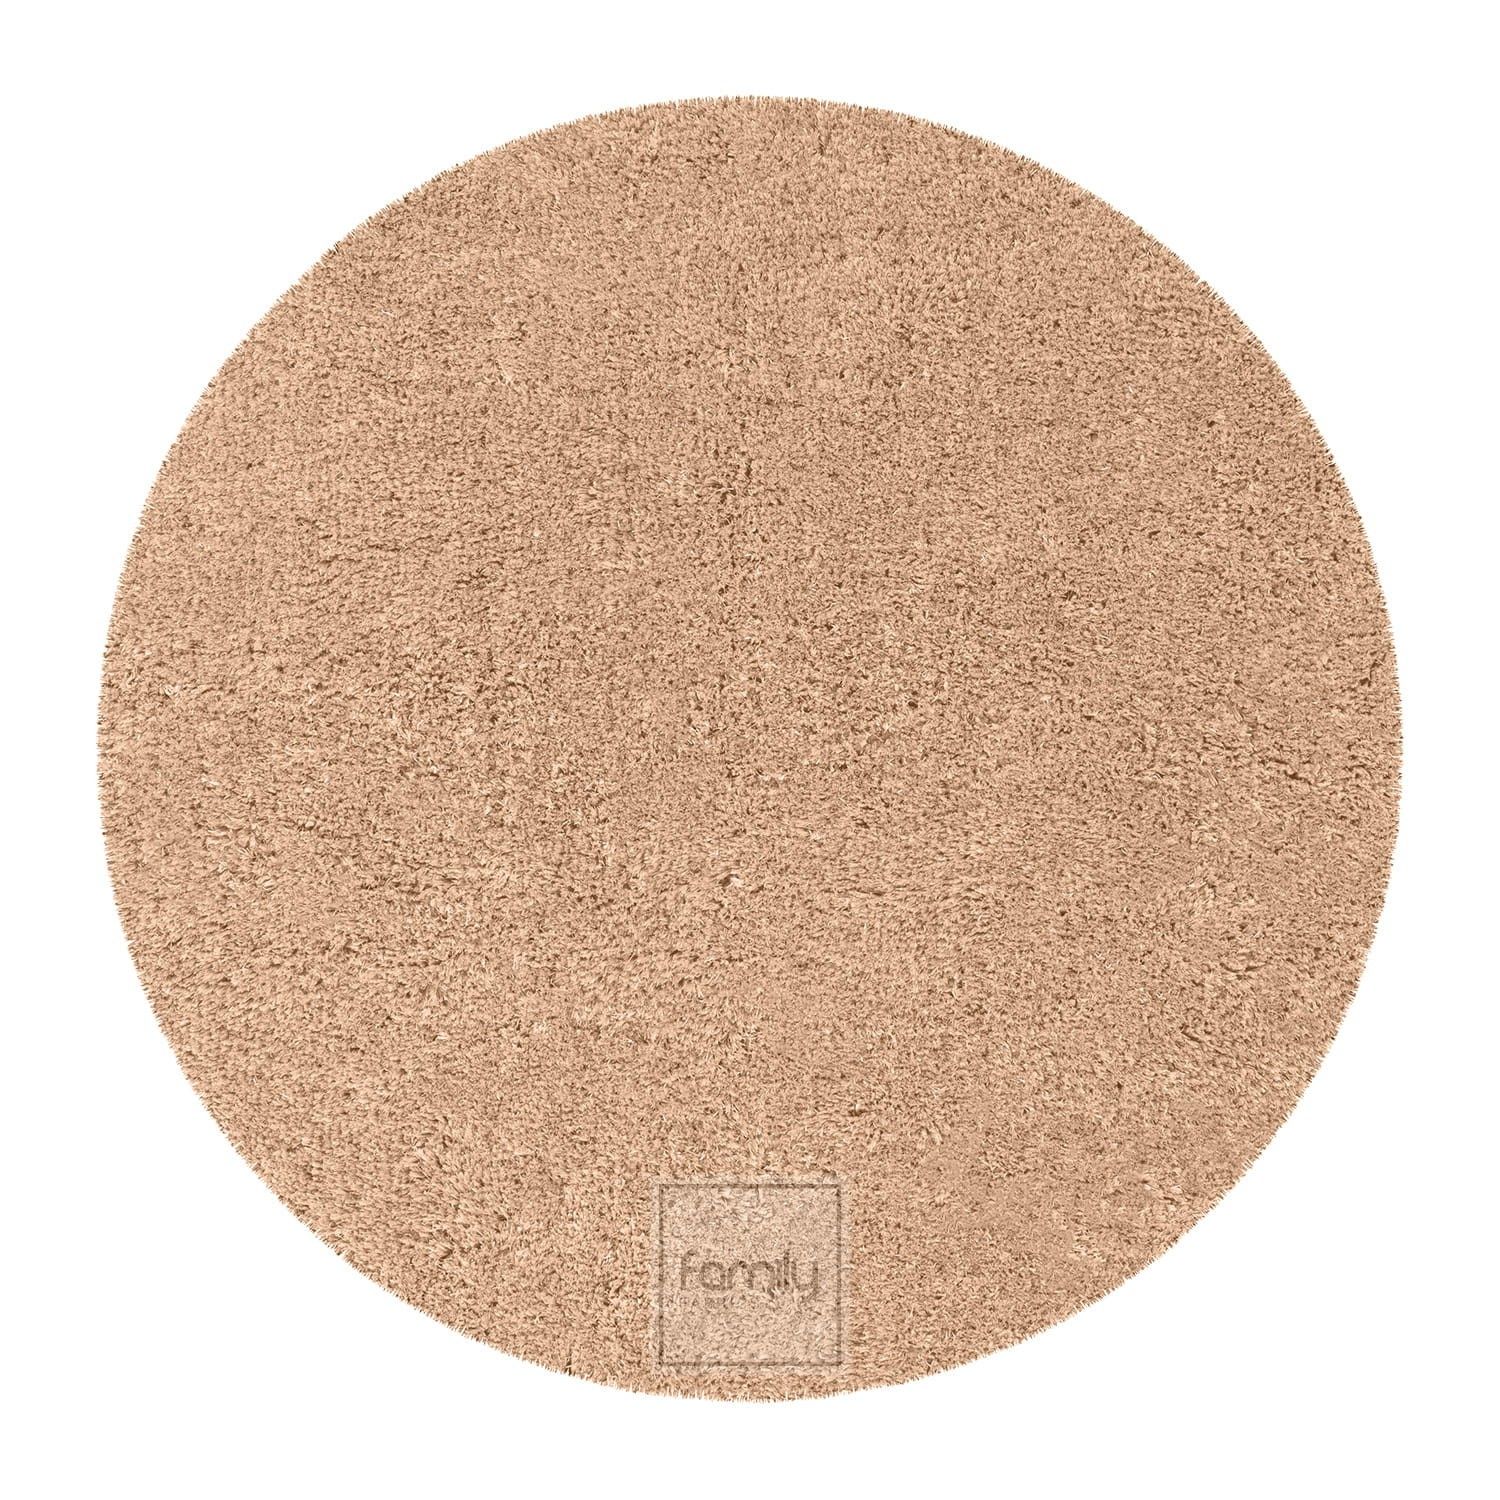 DomTextilu Kvalitný okrúhly koberec v univerzálnej béžovej farbe 44375-207886